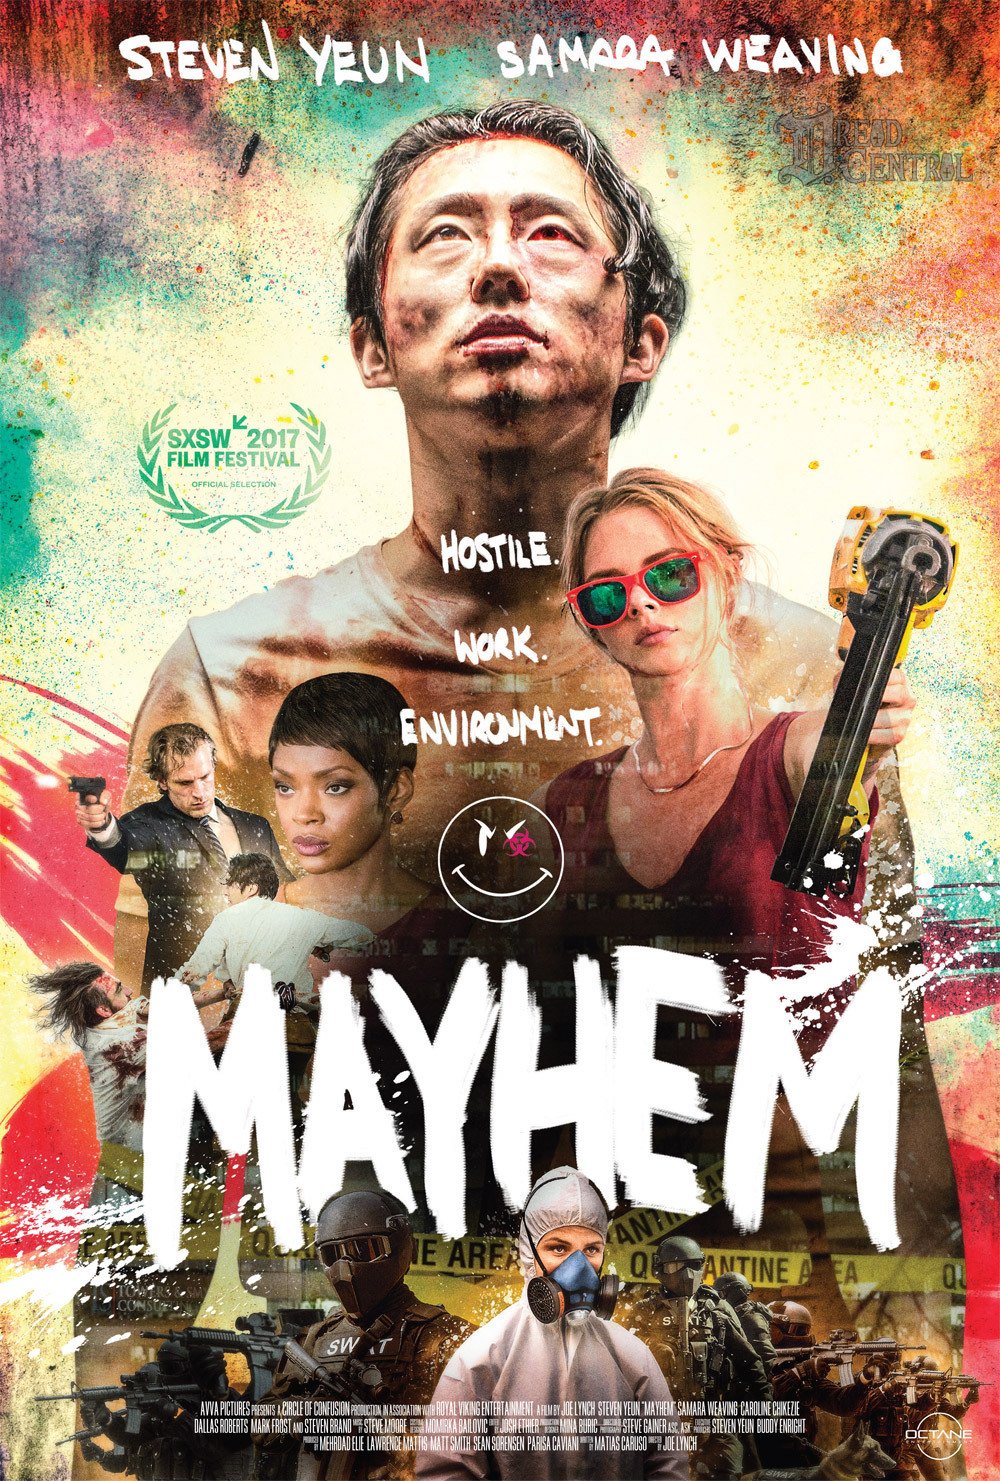 Mayhem poster